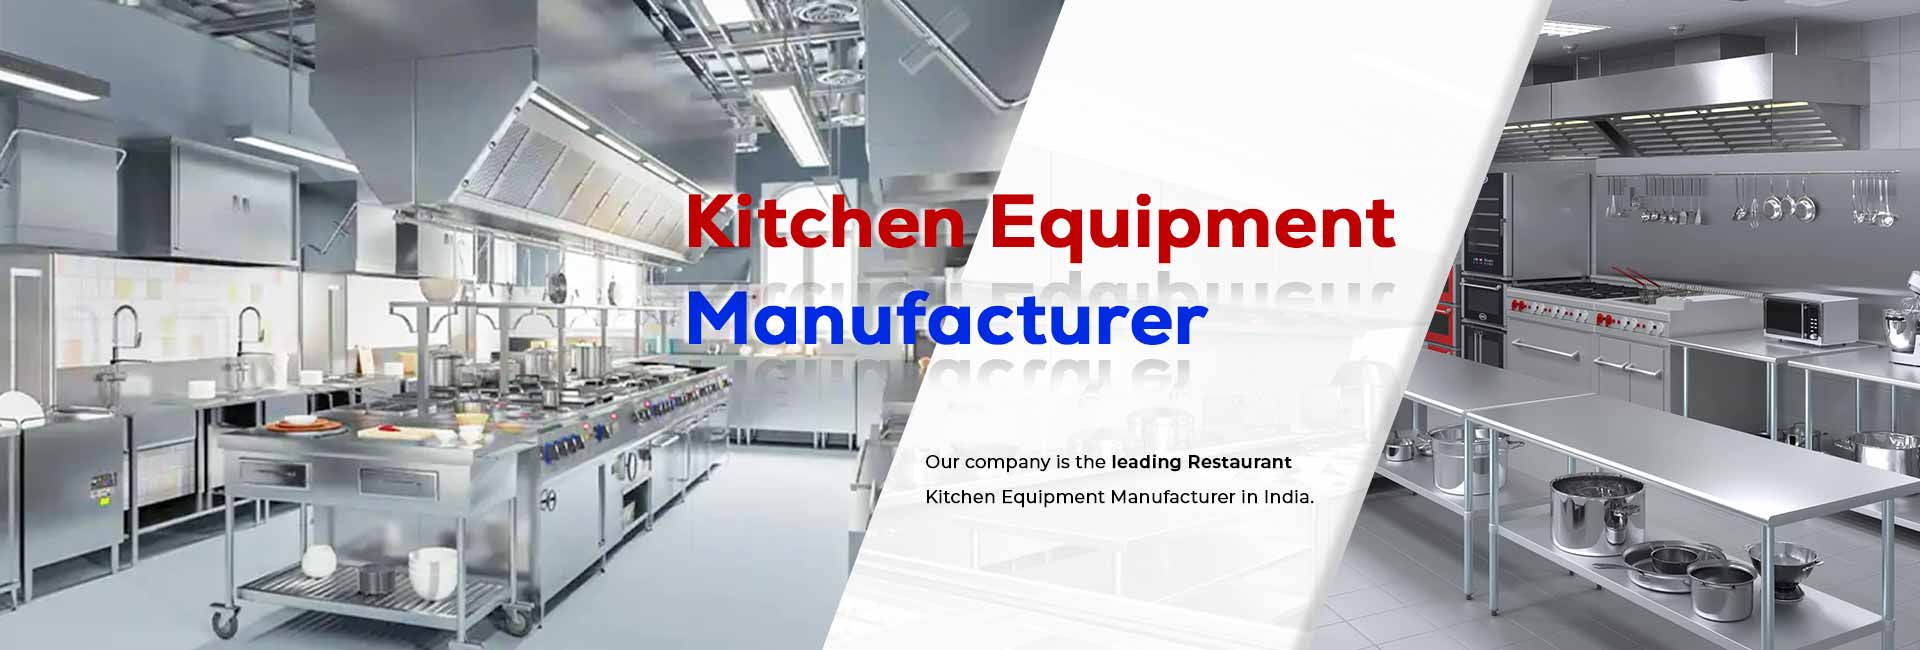 Banner of Kitchen Equipment Manufacturer